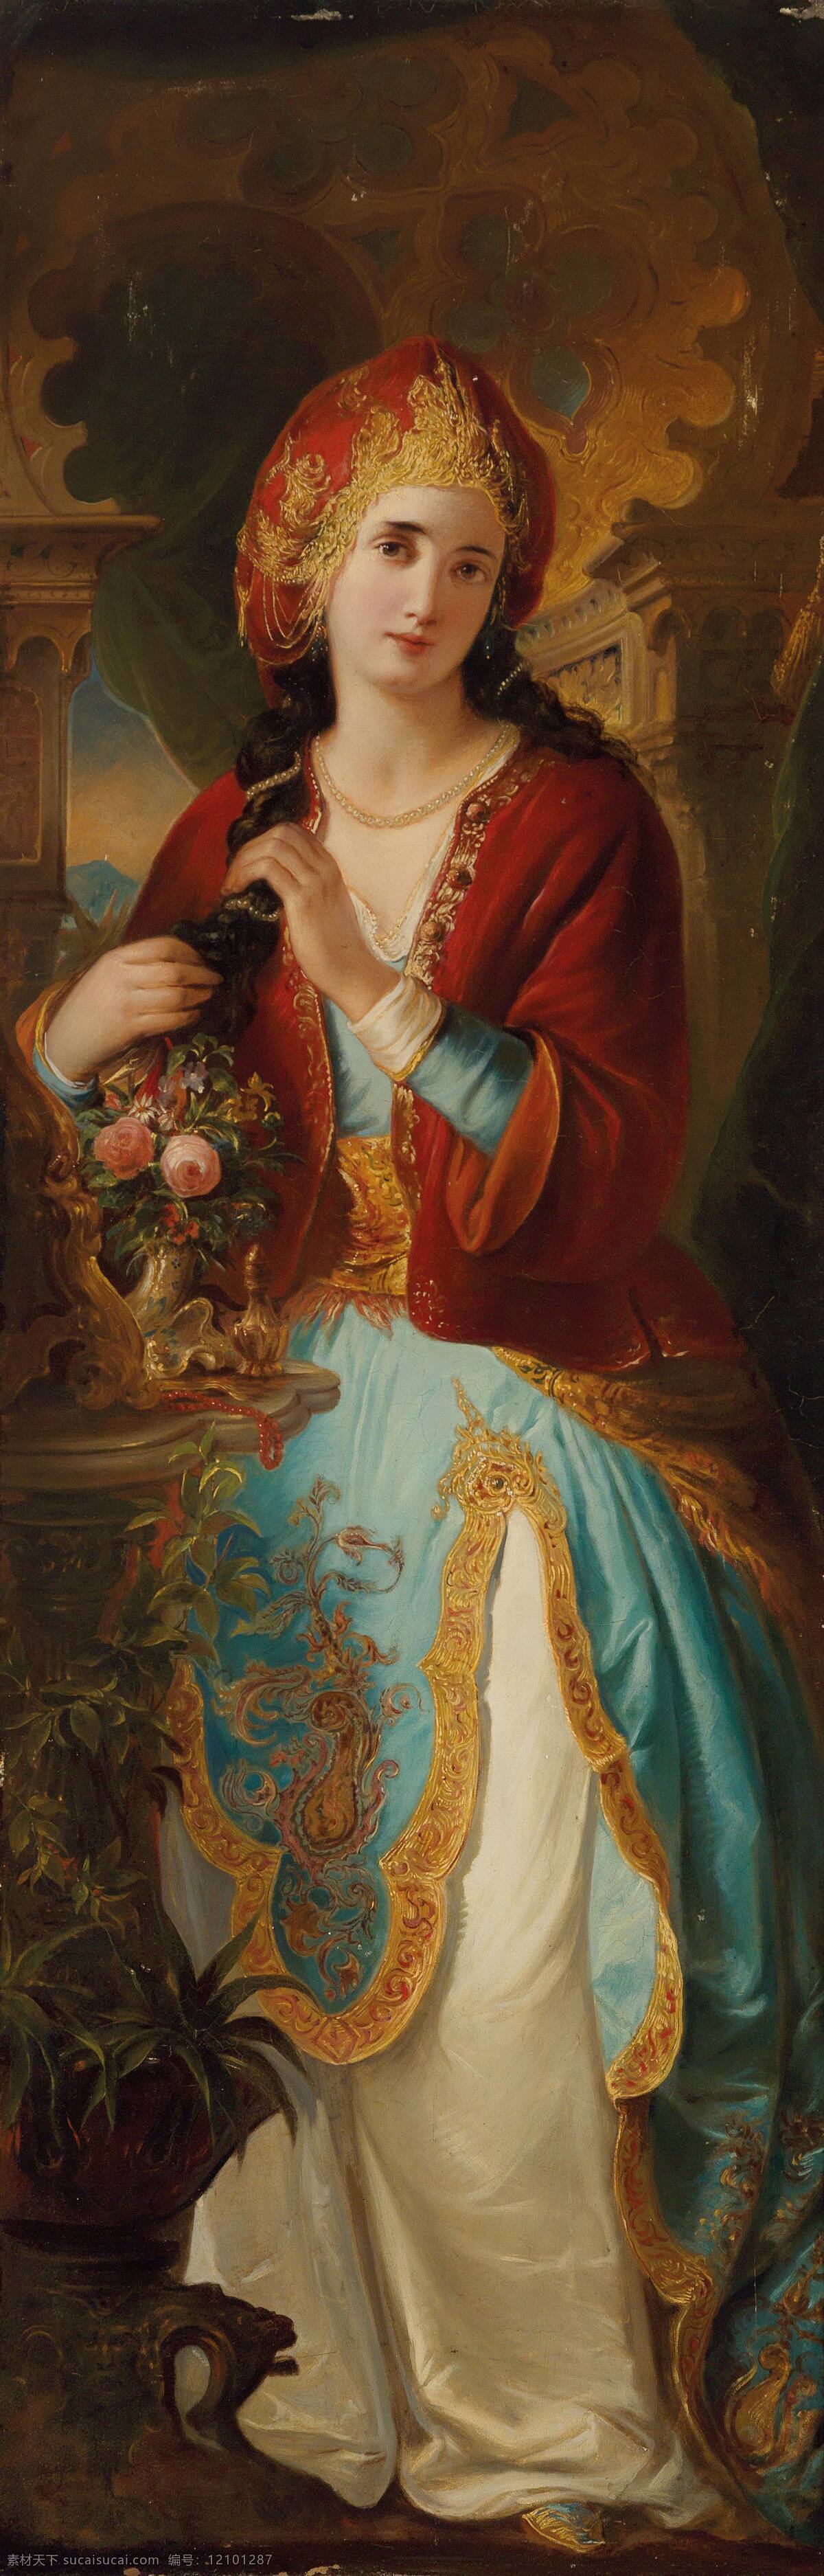 人物画像 阿拉伯美女 贵族之家 红蓝白衣裙 整理长发 19世纪油画 油画 文化艺术 绘画书法